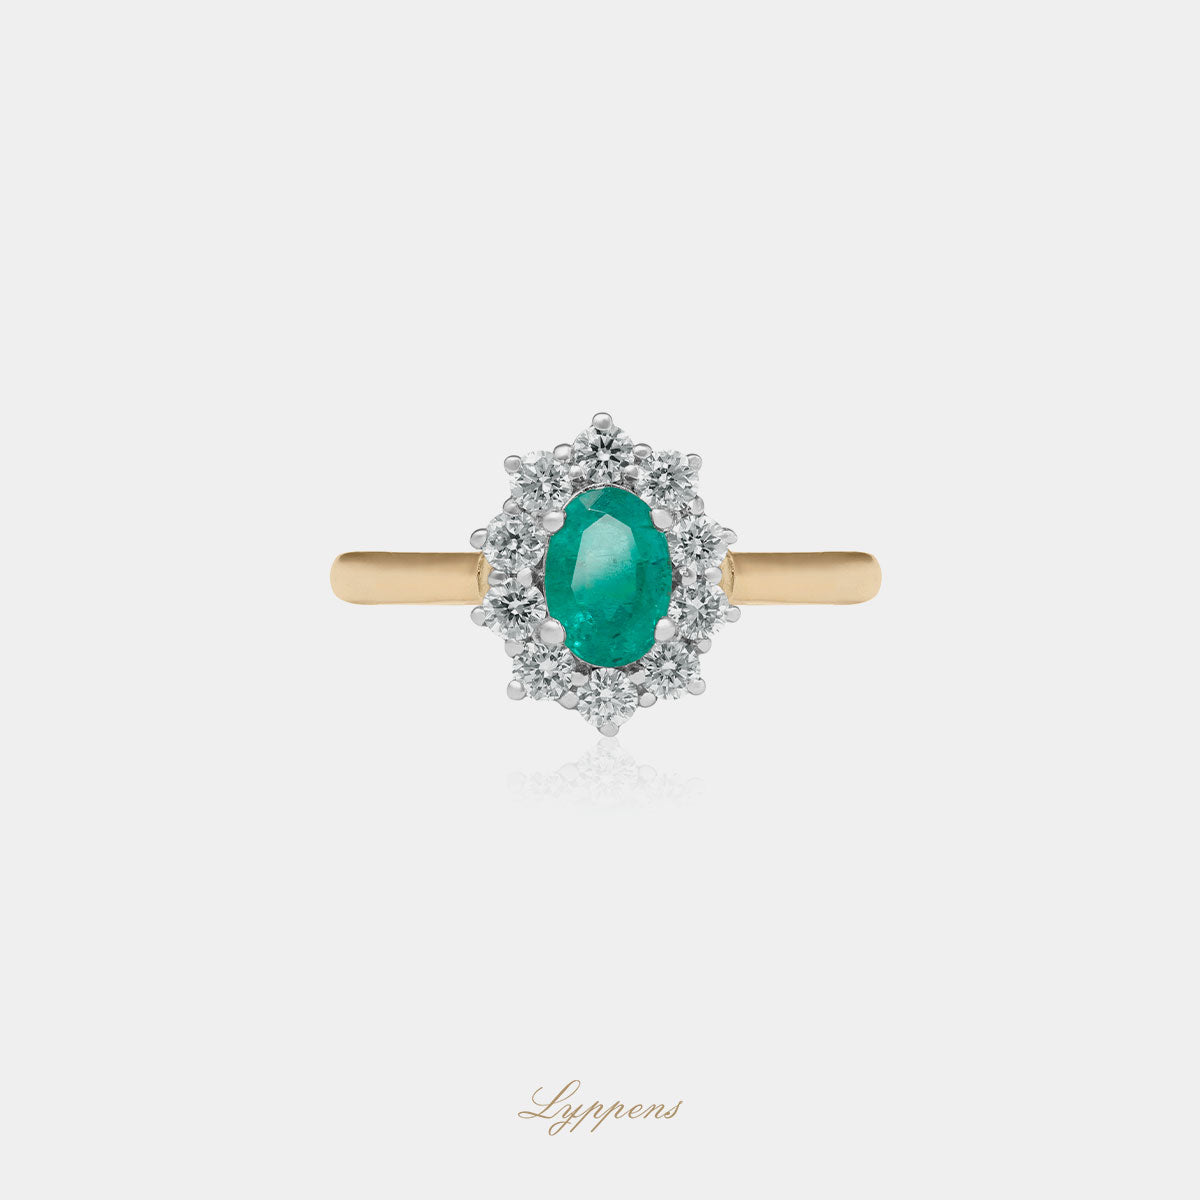 Geel- met witgouden entourage ring in het midden gezet met een ovaal geslepen smaragd en in een entourage van briljant geslepen diamant.